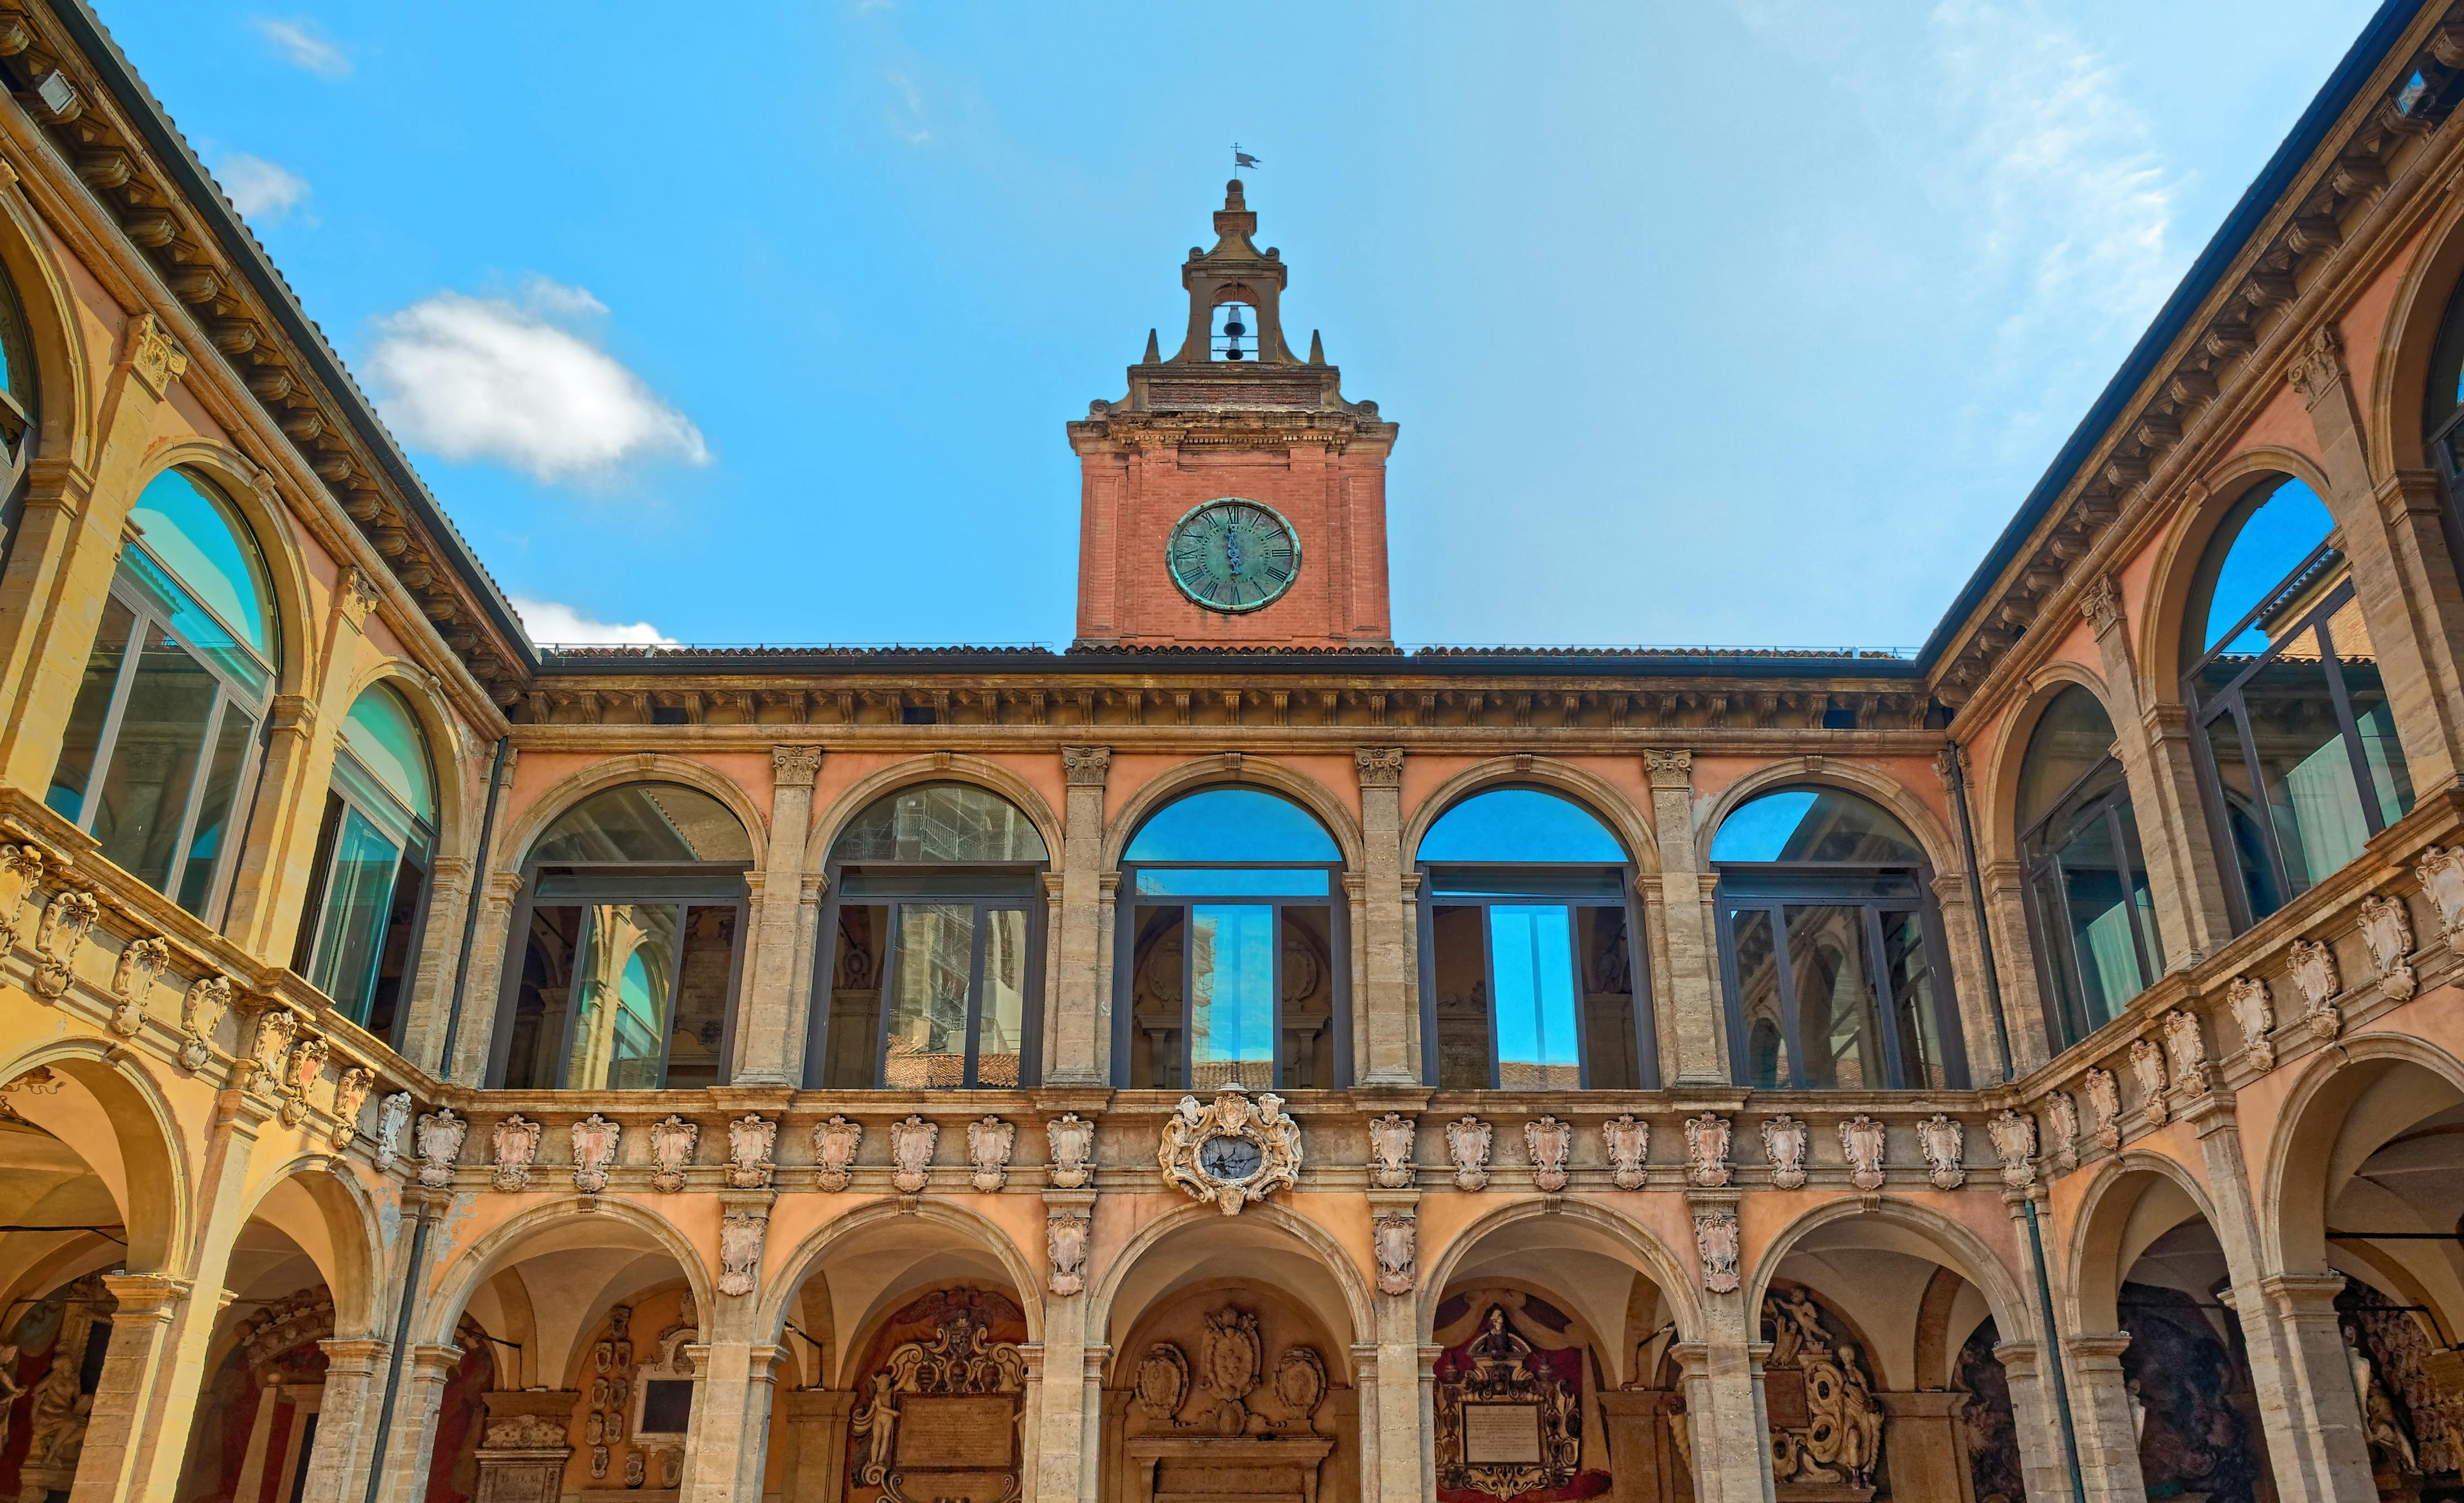 Recorrido en audio del Palacio Archiginnasio en Bolonia con degustación de comida